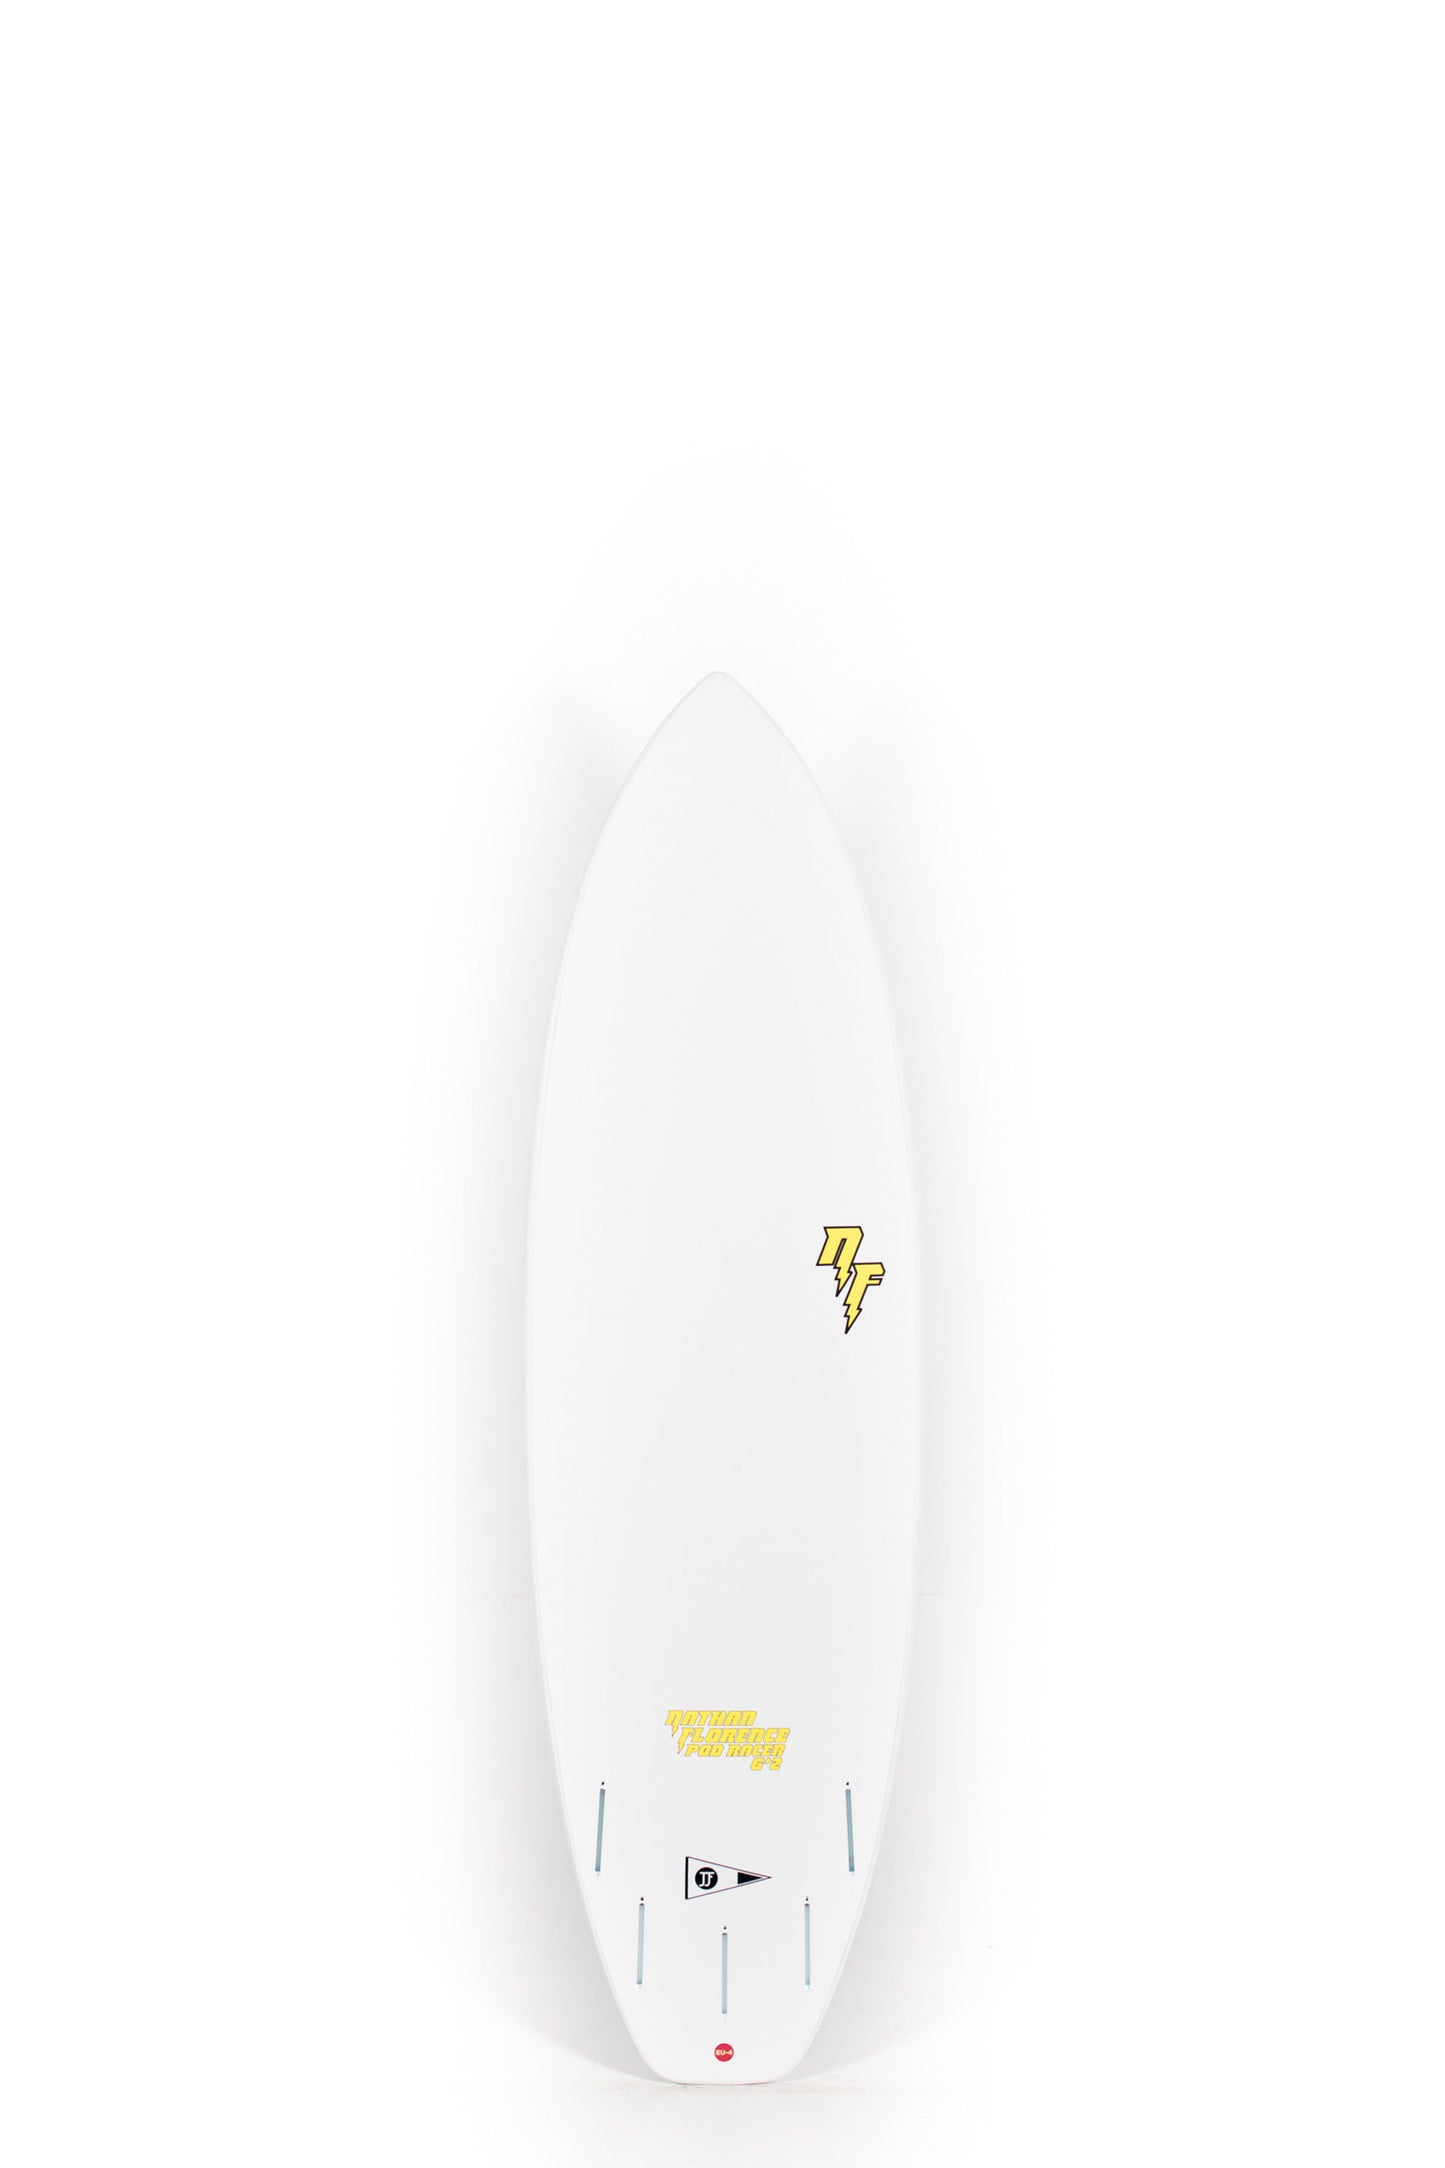 Pukas Surf Shop - JJF SURFBOARD - Nathan Florence Pod Racer 6´2